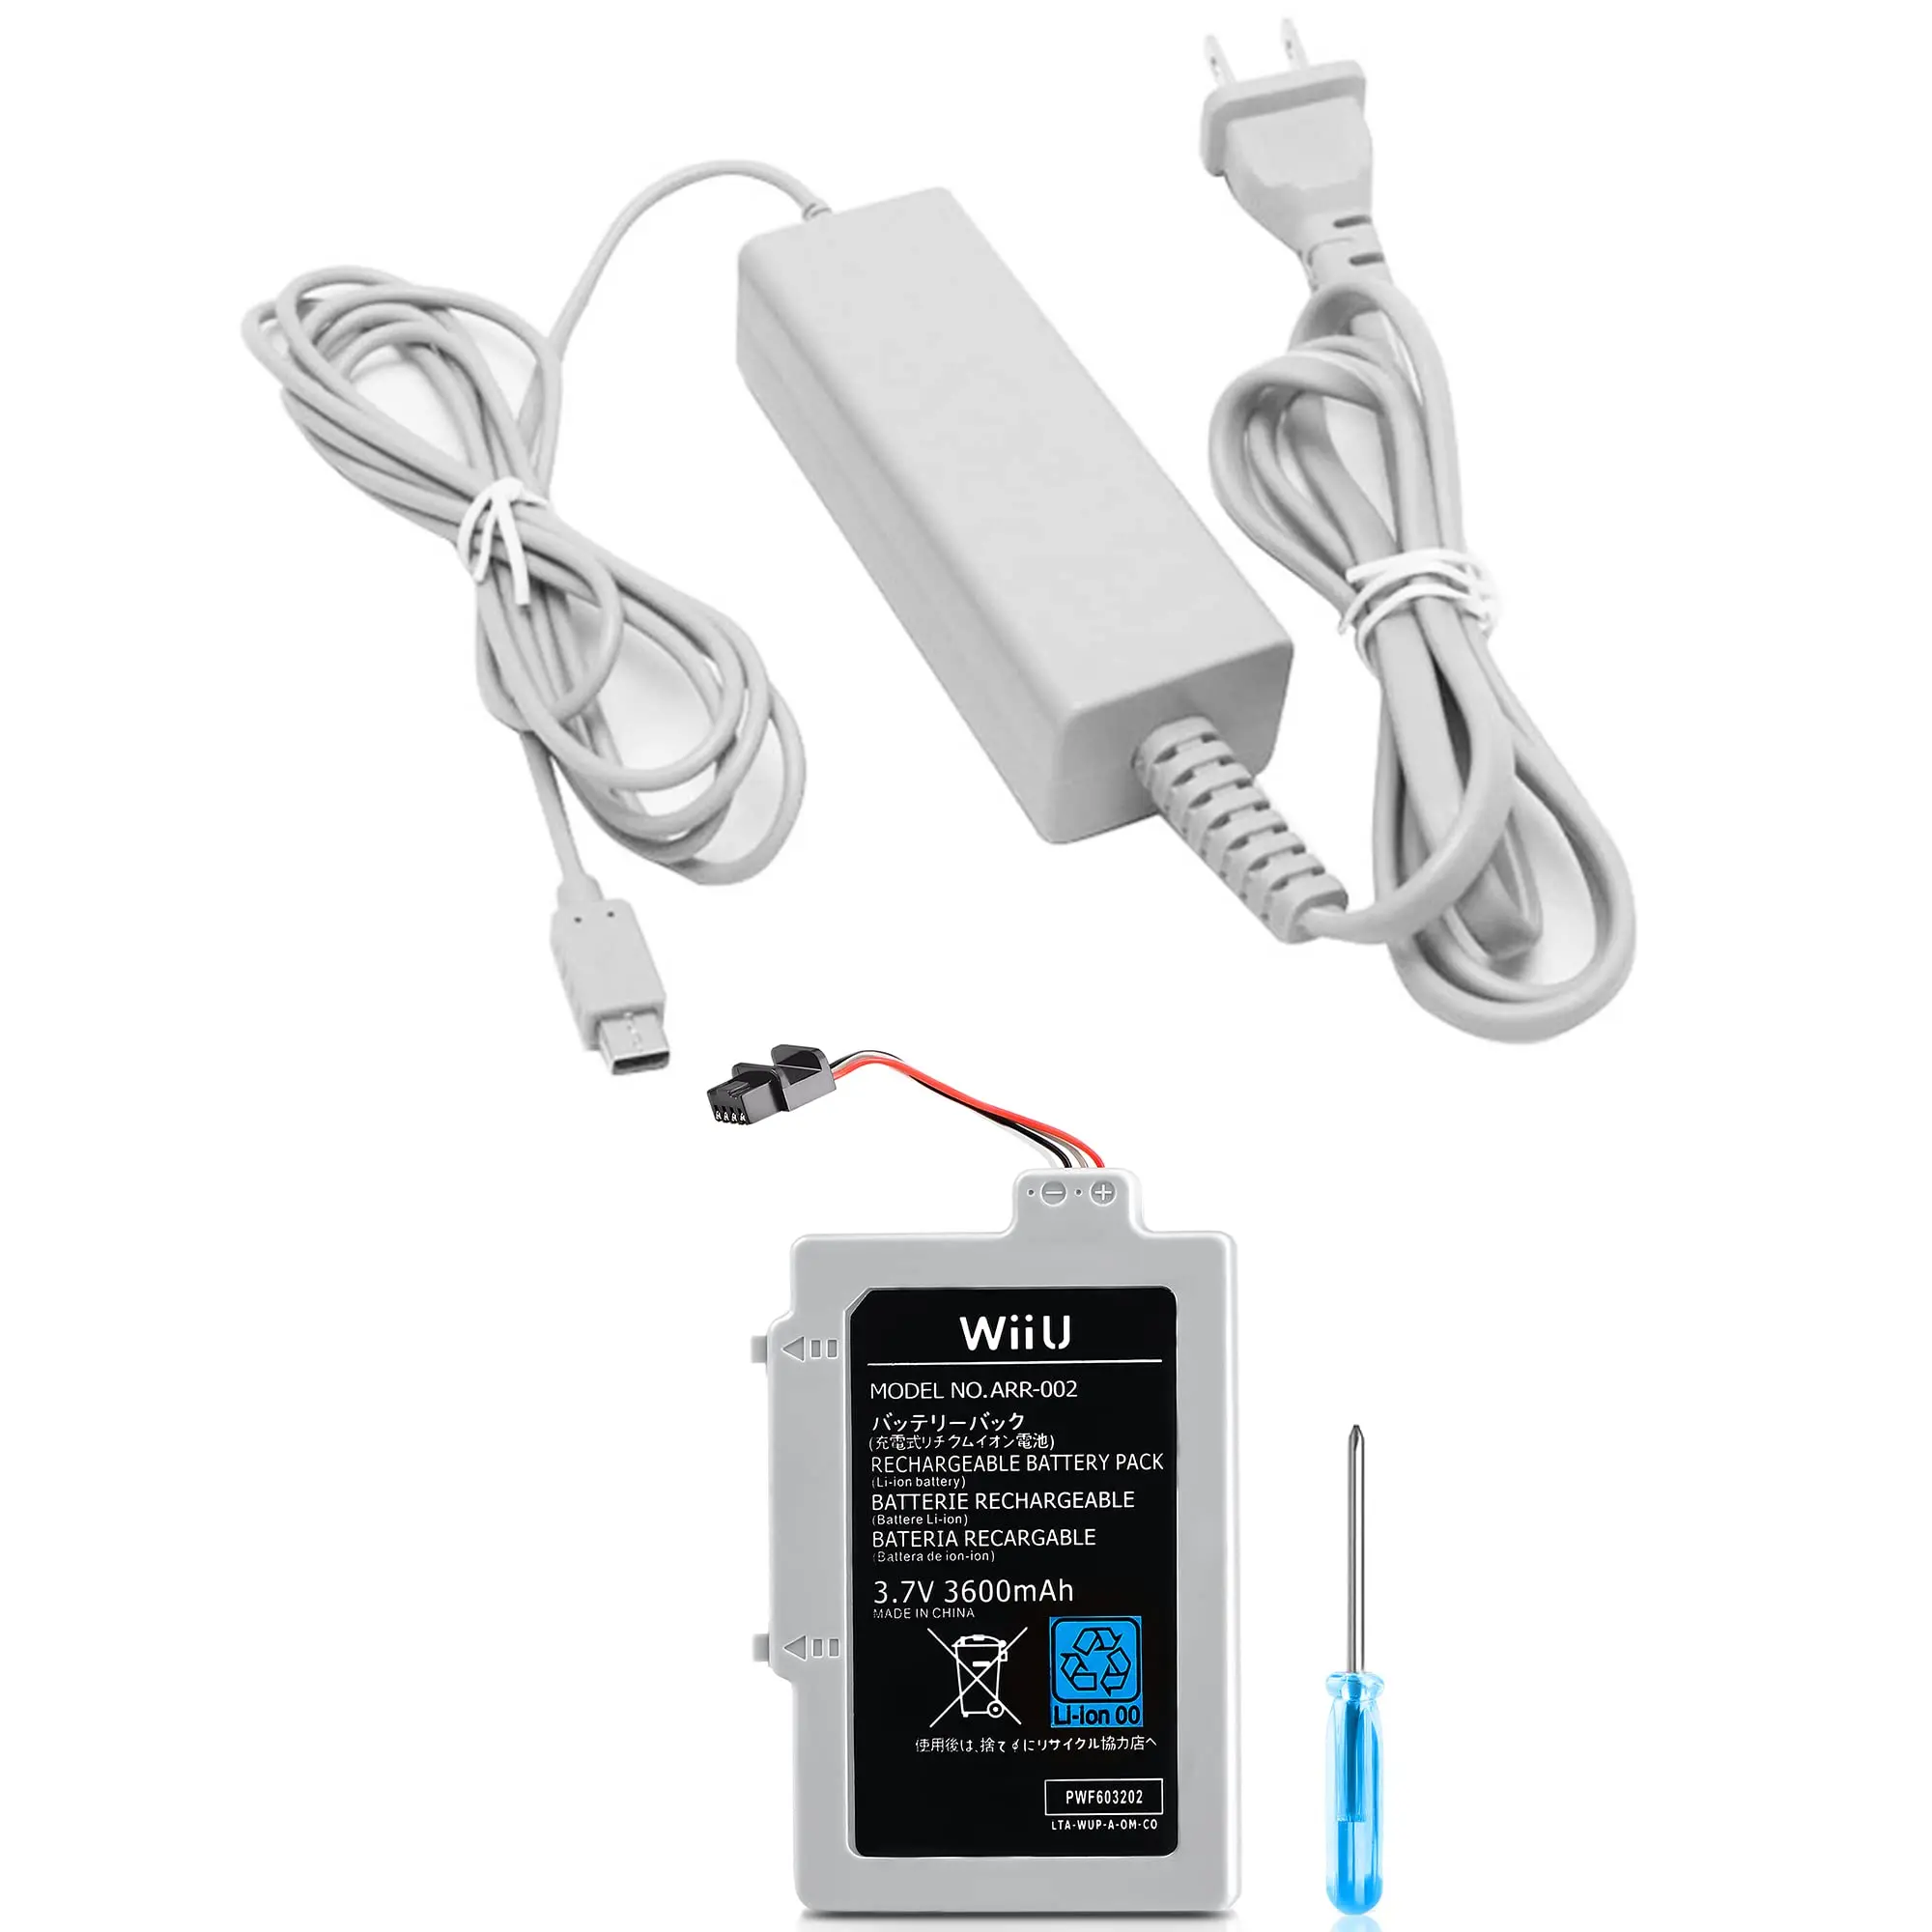 baterias y cargador para wii u - Qué accesorios trae una Wii U